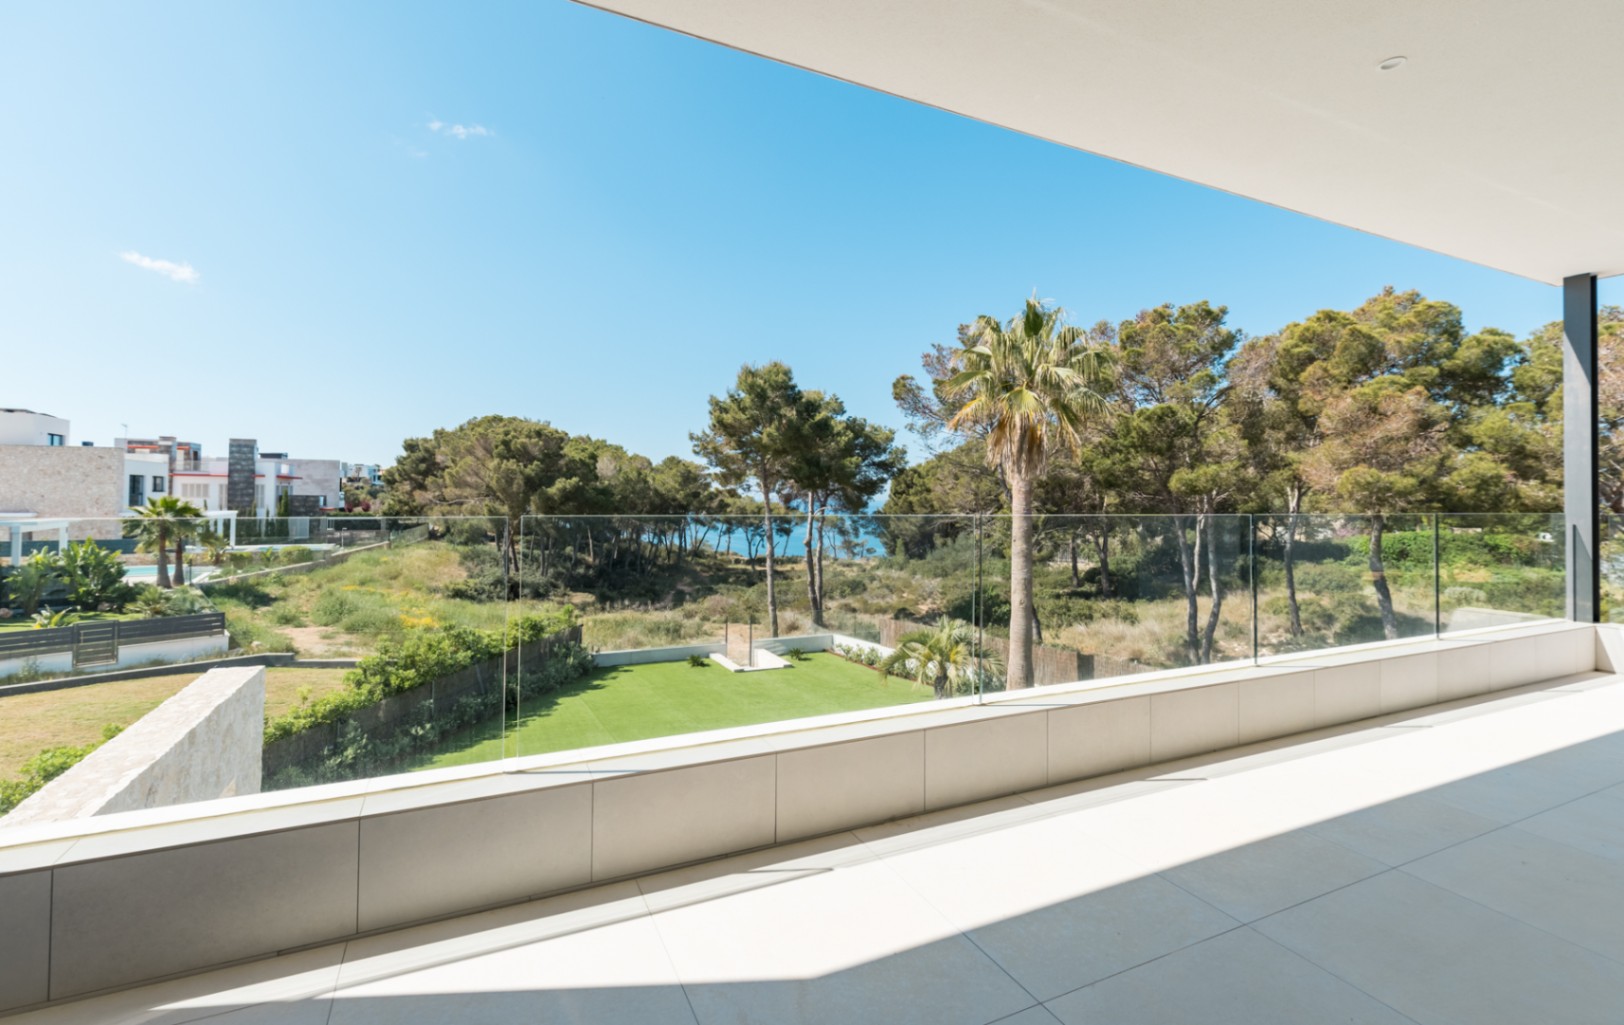 Schitterende moderne villa met tuin en zwembad